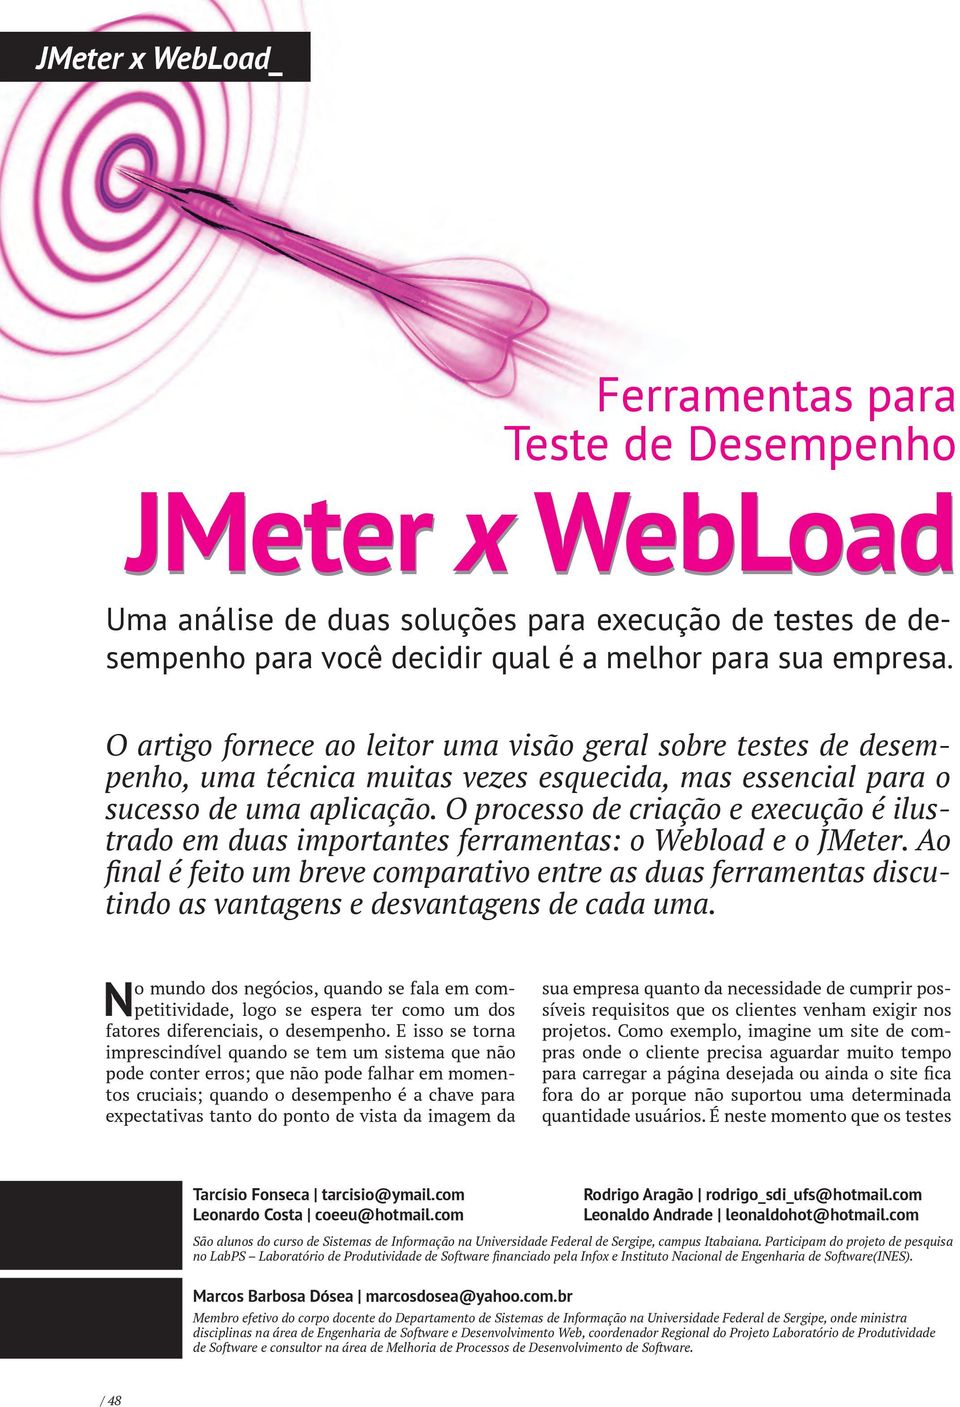 O processo de criação e execução é ilustrado em duas importantes ferramentas: o Webload e o JMeter.